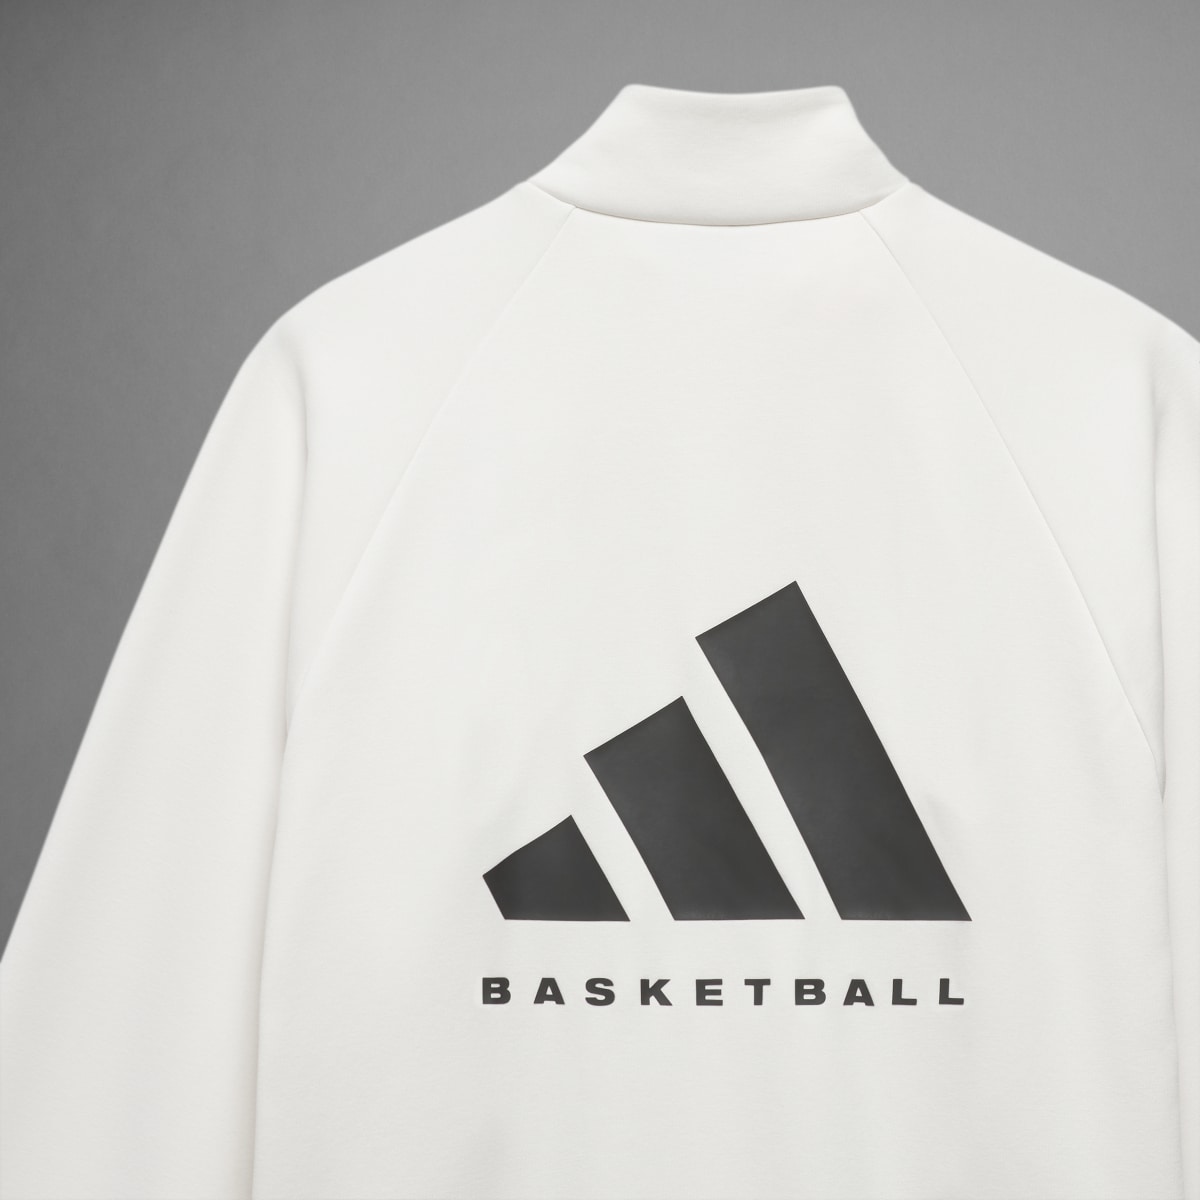 Adidas Casaco 001 adidas Basketball. 8